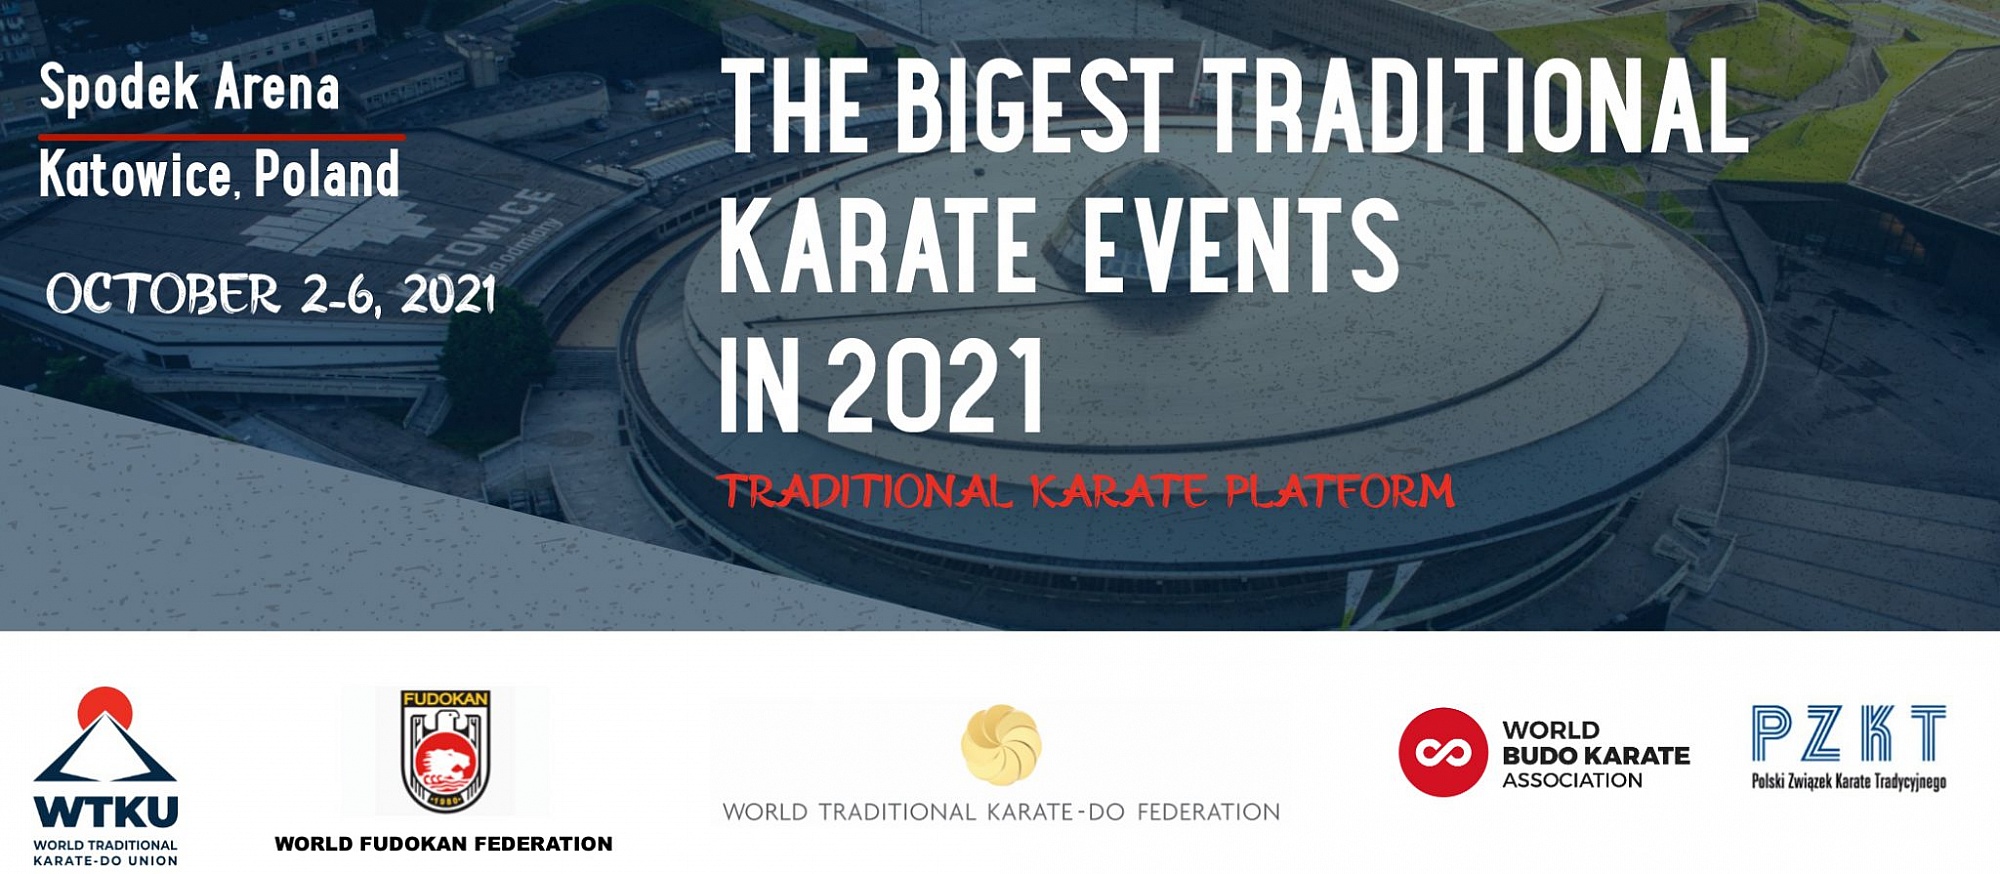 Największe wydarzenie karate tradycyjnego w 2021 roku odbędzie się w katowickim Spodku! Aleksandra Politowicz powalczy o Mistrzostwo Europy!